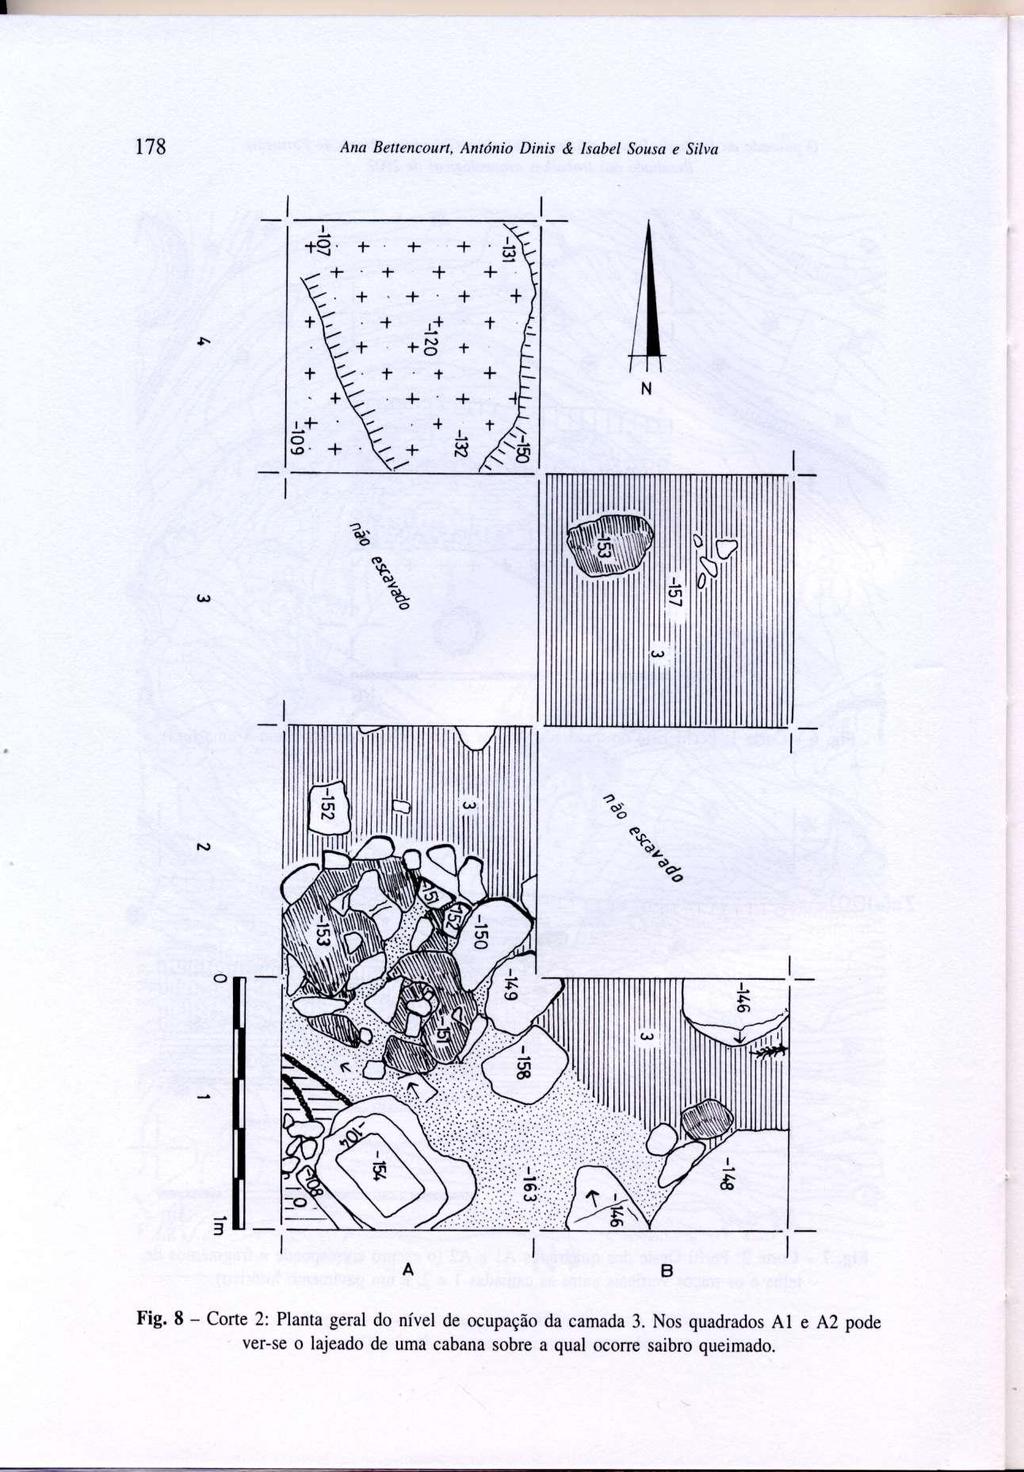 Fig. 8 - Corte 2: Planta geral do nível de ocupação da camada 3.